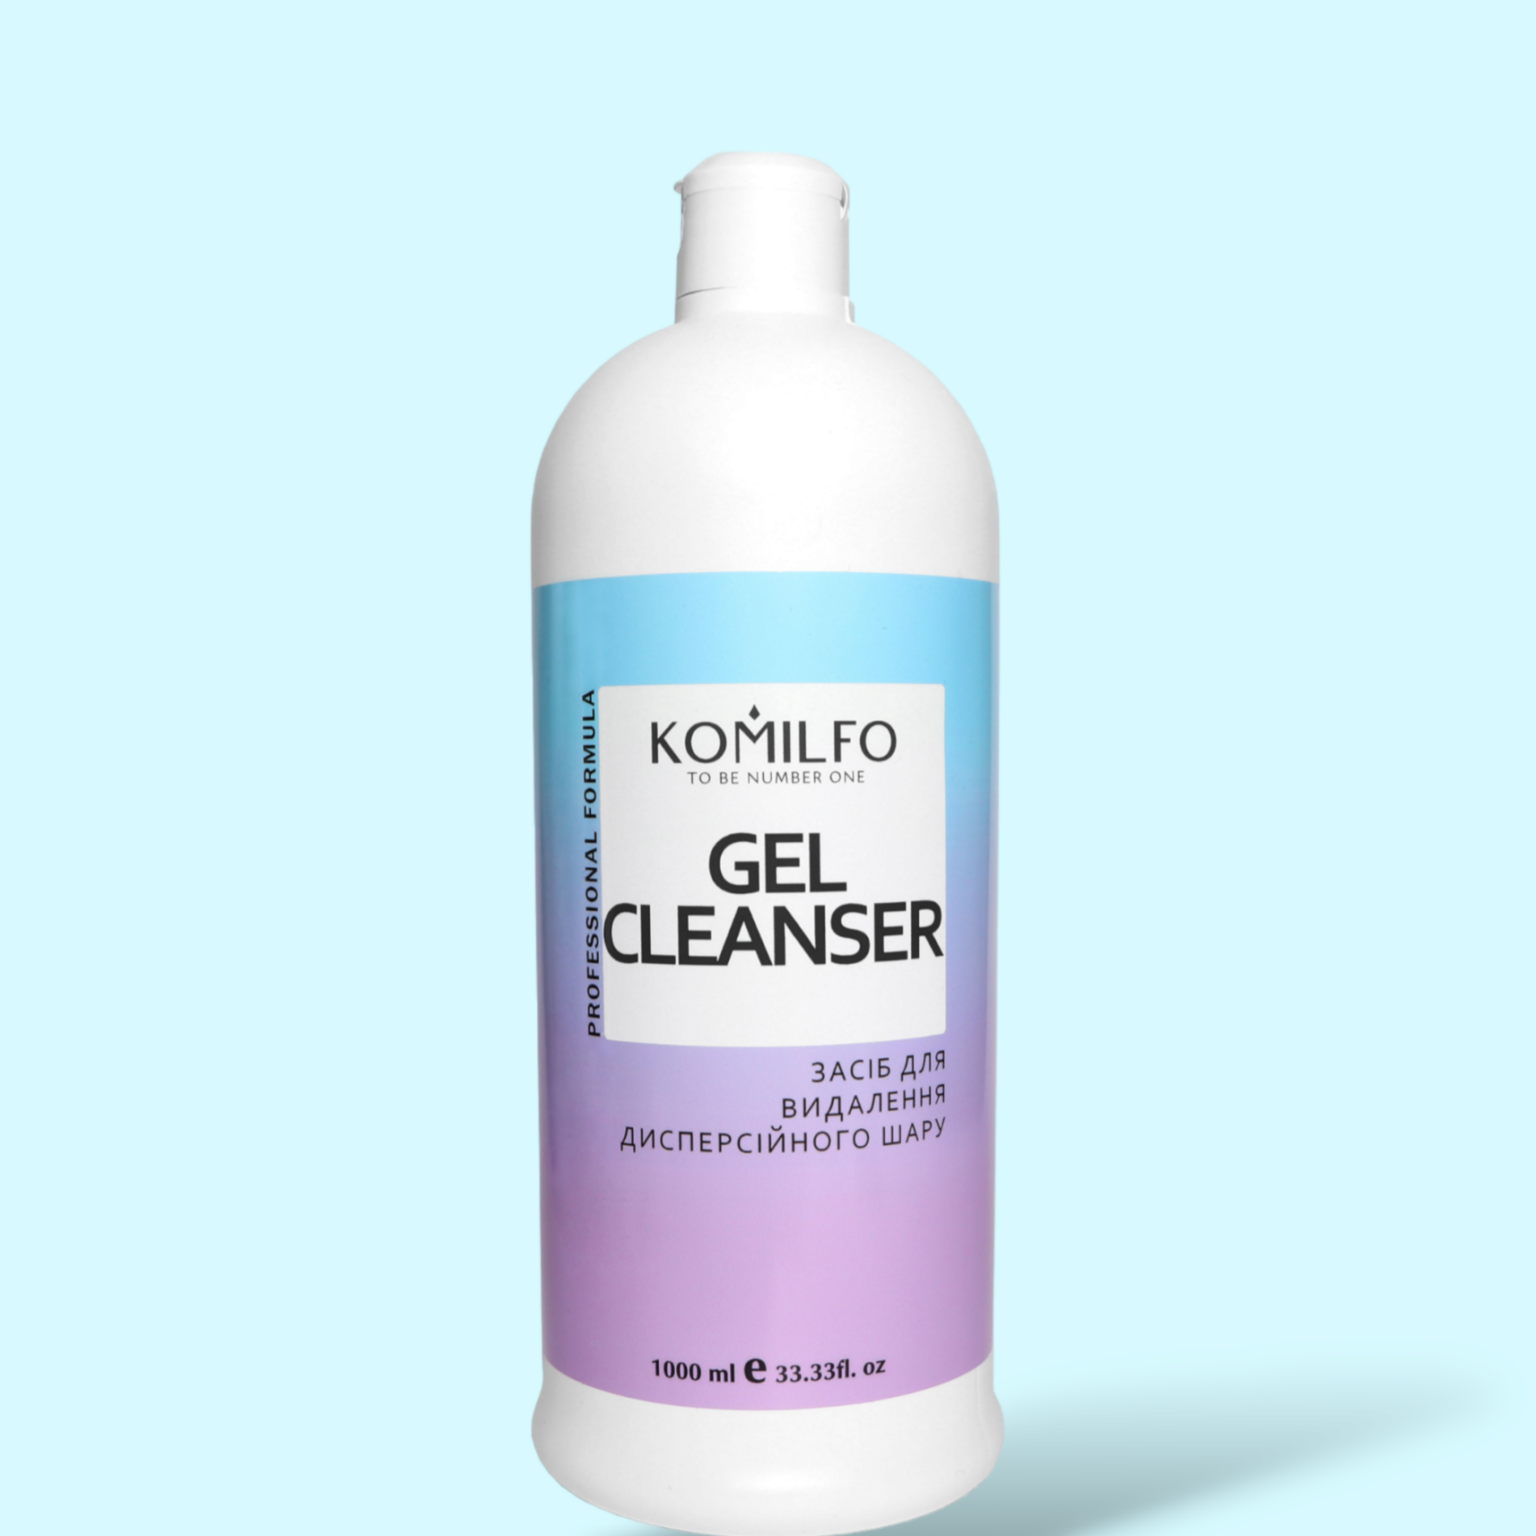 Komilfo Gel Cleanser – засіб для зняття липкого шару, 1000 мл